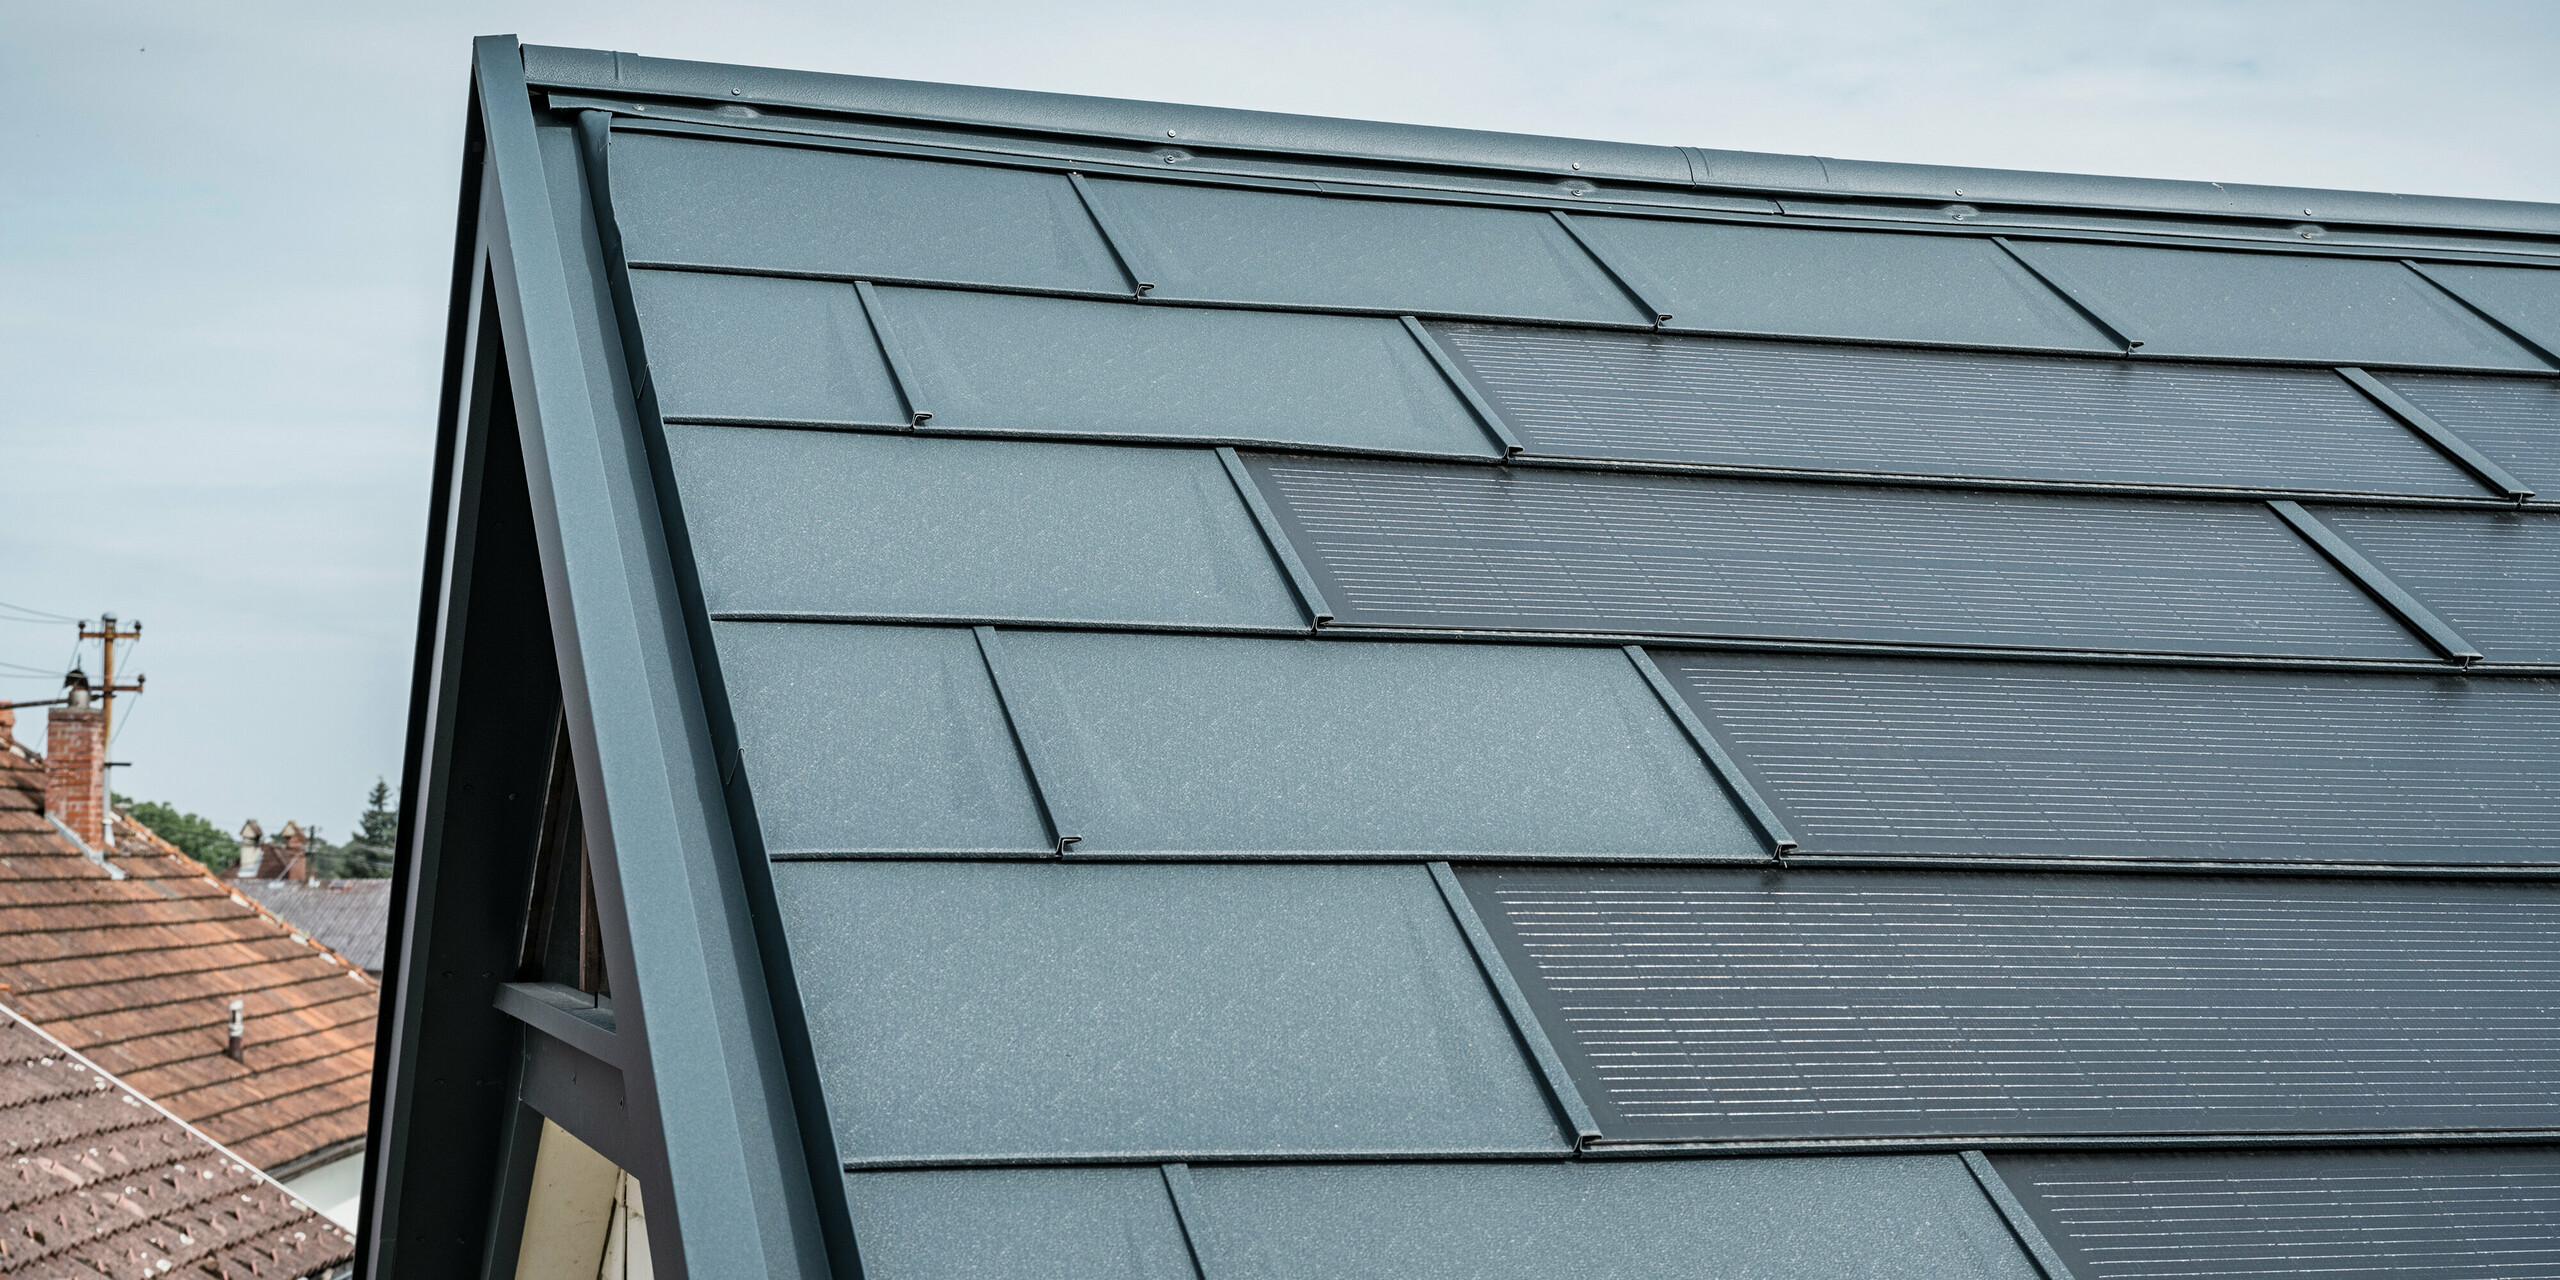 Vista dettagliata del tetto di una casa dotata dell'innovativa tegola PREFA Solar. Le tegole con celle fotovoltaiche integrate si presentano in un elegante colore antracite. La superficie omogenea si integra perfettamente nel tetto, creando un aspetto moderno e pulito. L'innovativo sistema di copertura garantisce un utilizzo efficiente dell'energia senza compromettere l'estetica.